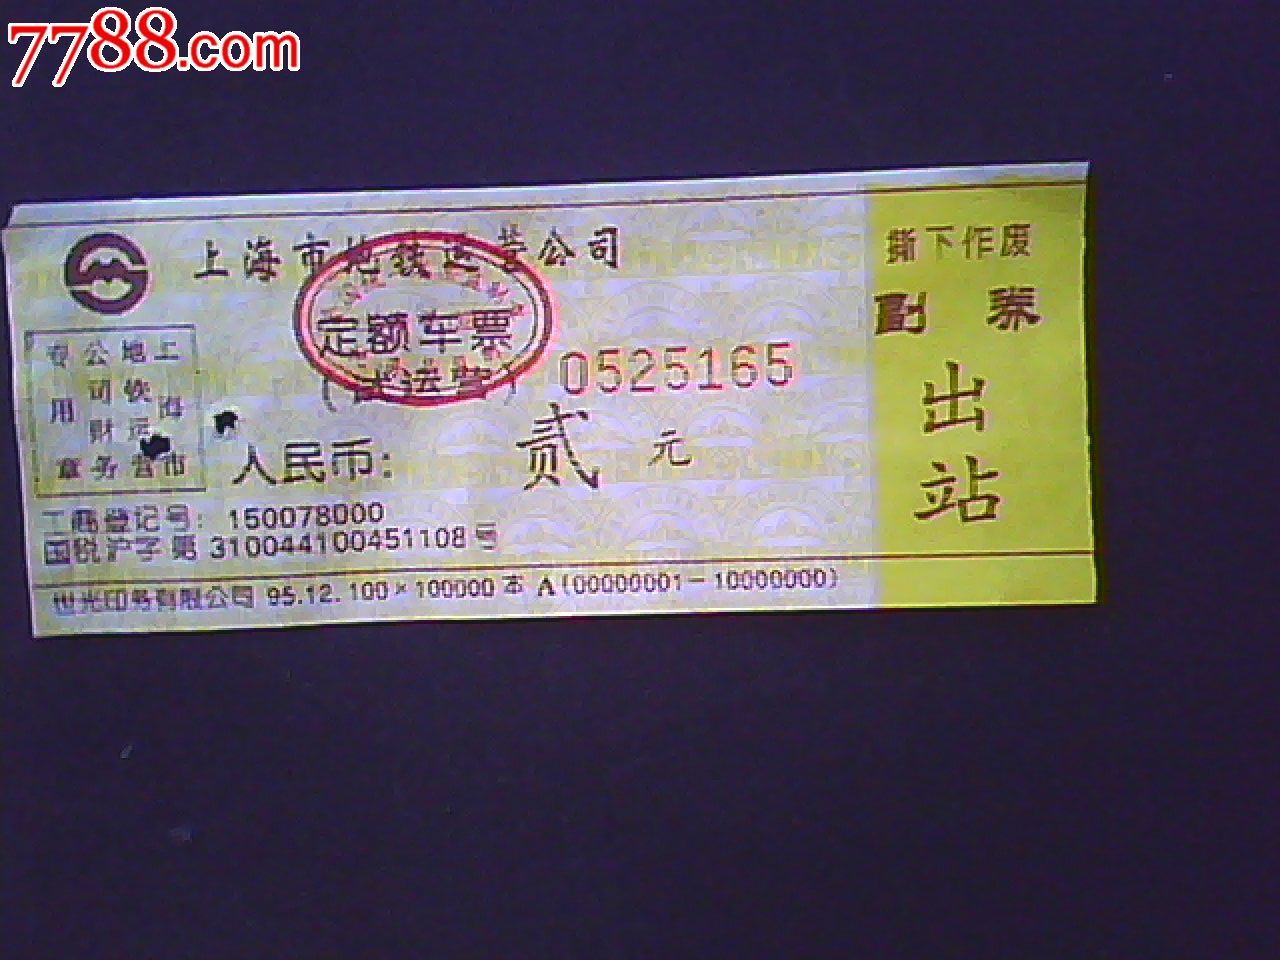 上海地铁票-价格:5元-se21048843-地铁\/轨道车